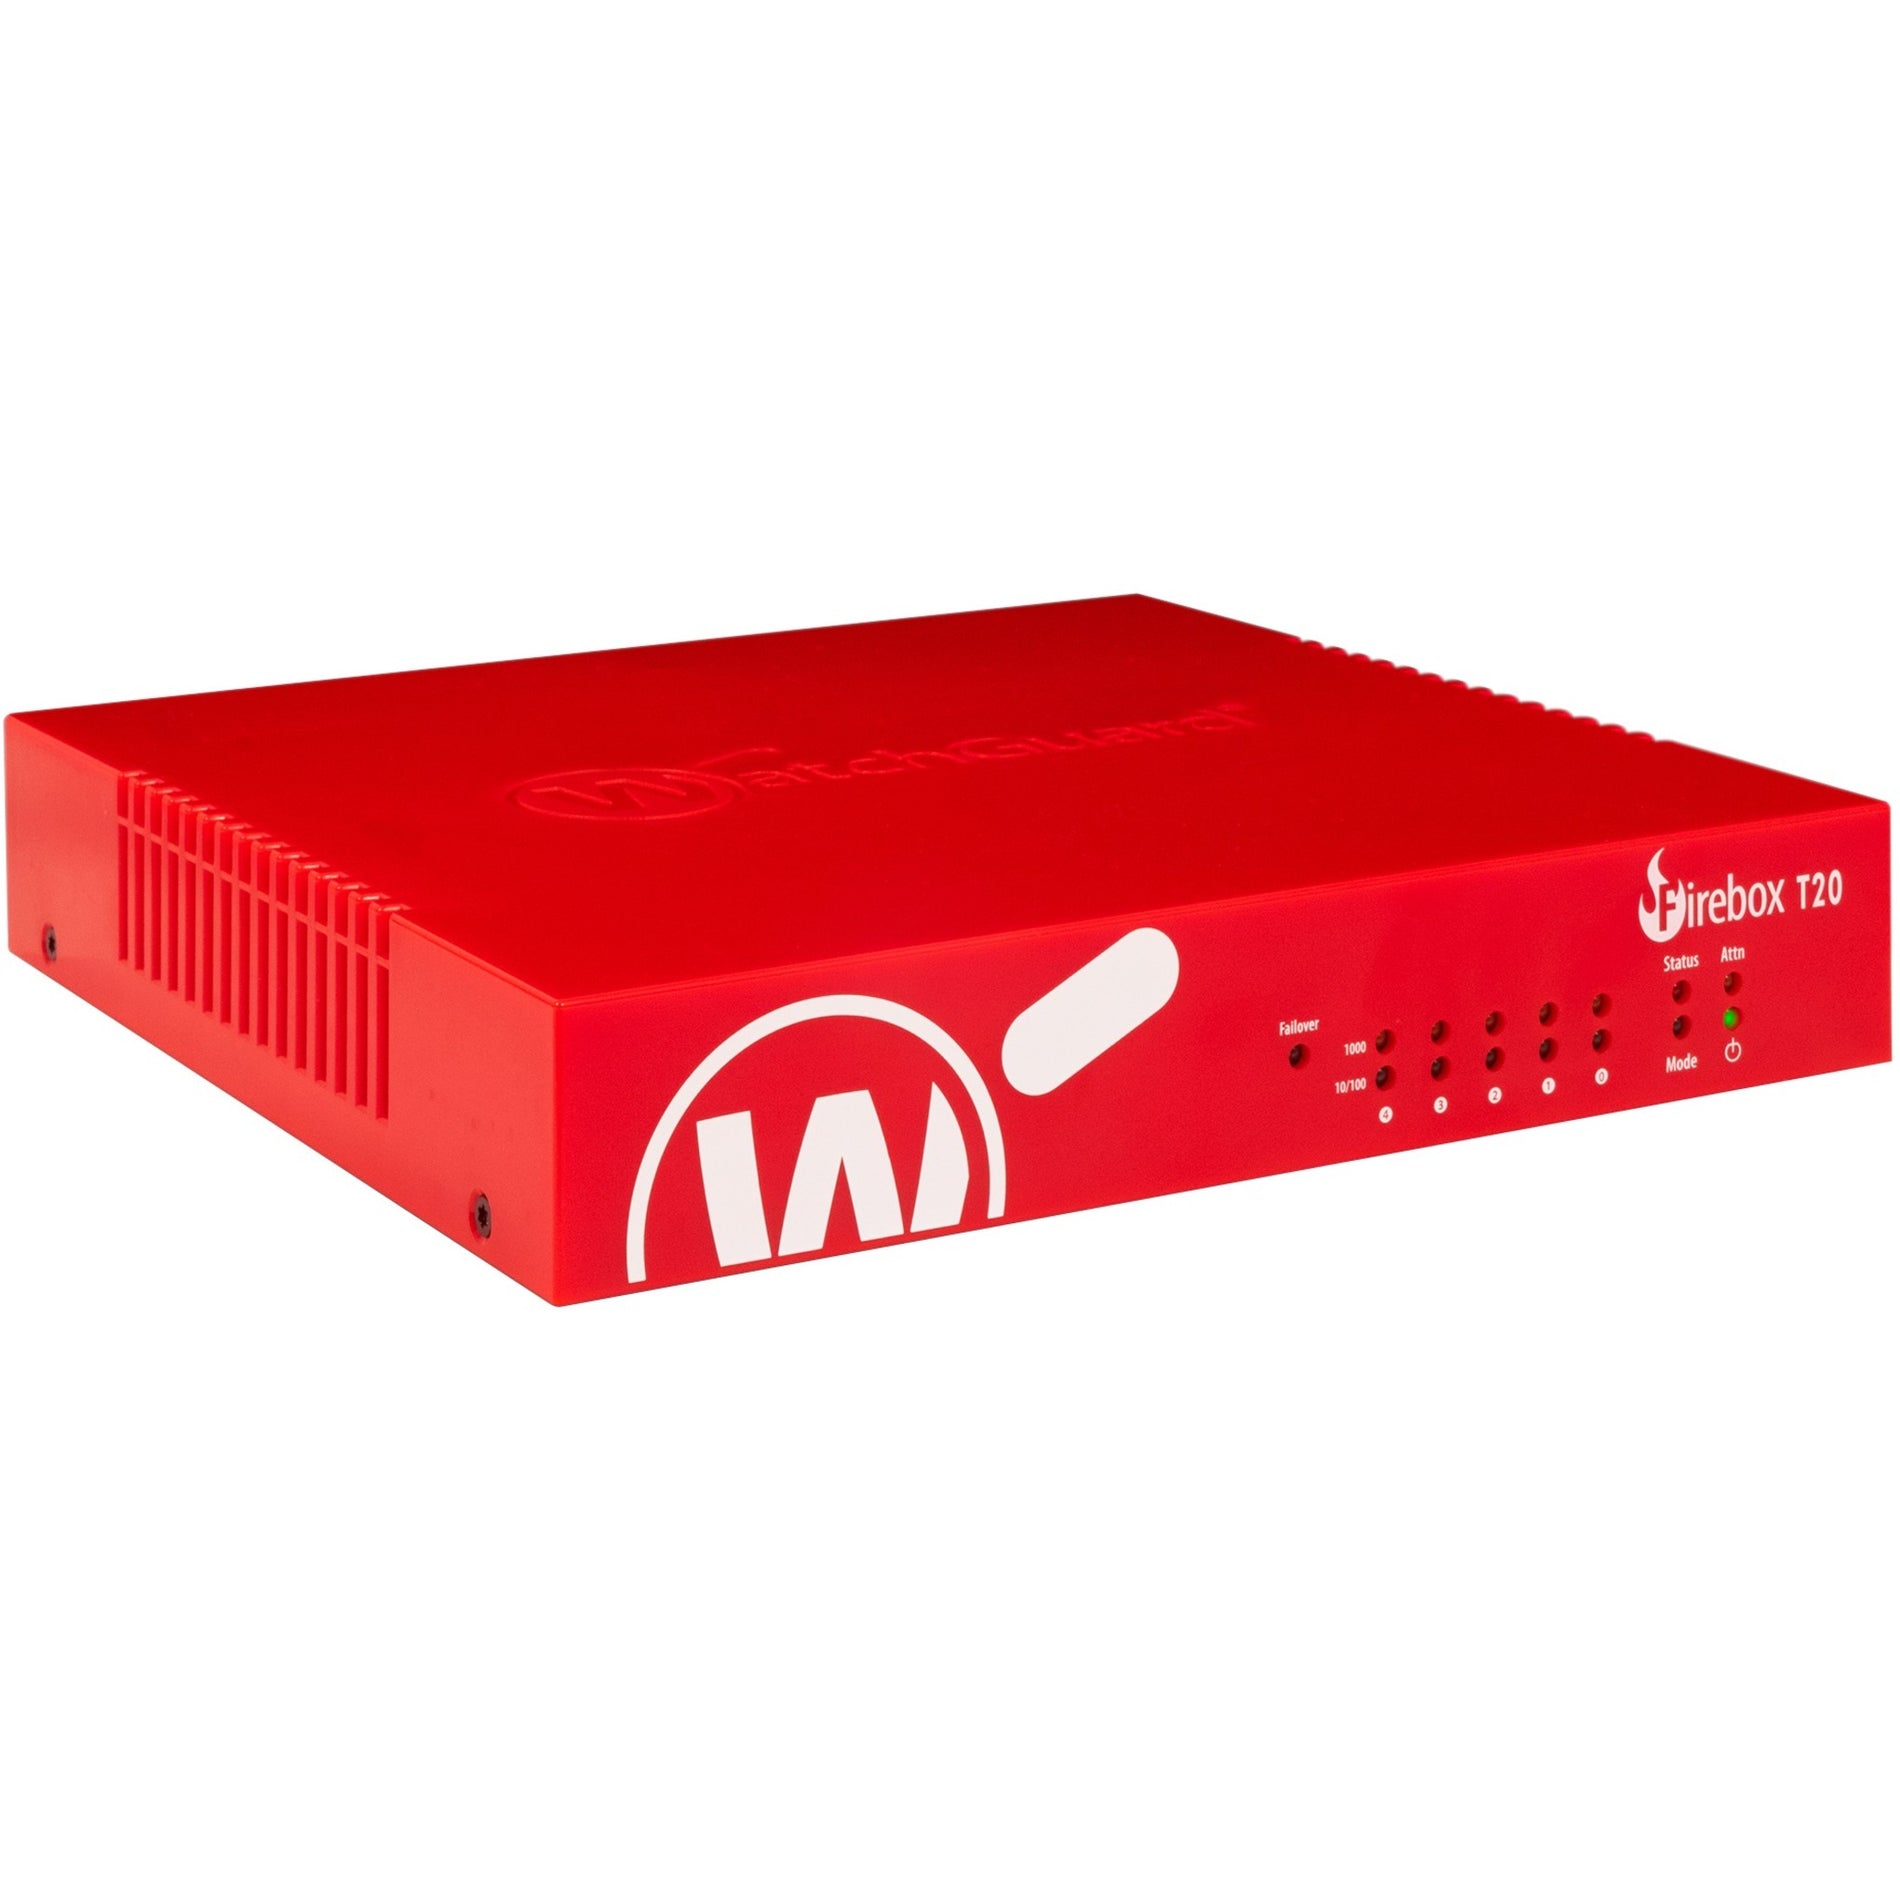 WatchGuard Firebox T20 Network Security/Firewall Appliance [Discontinued]